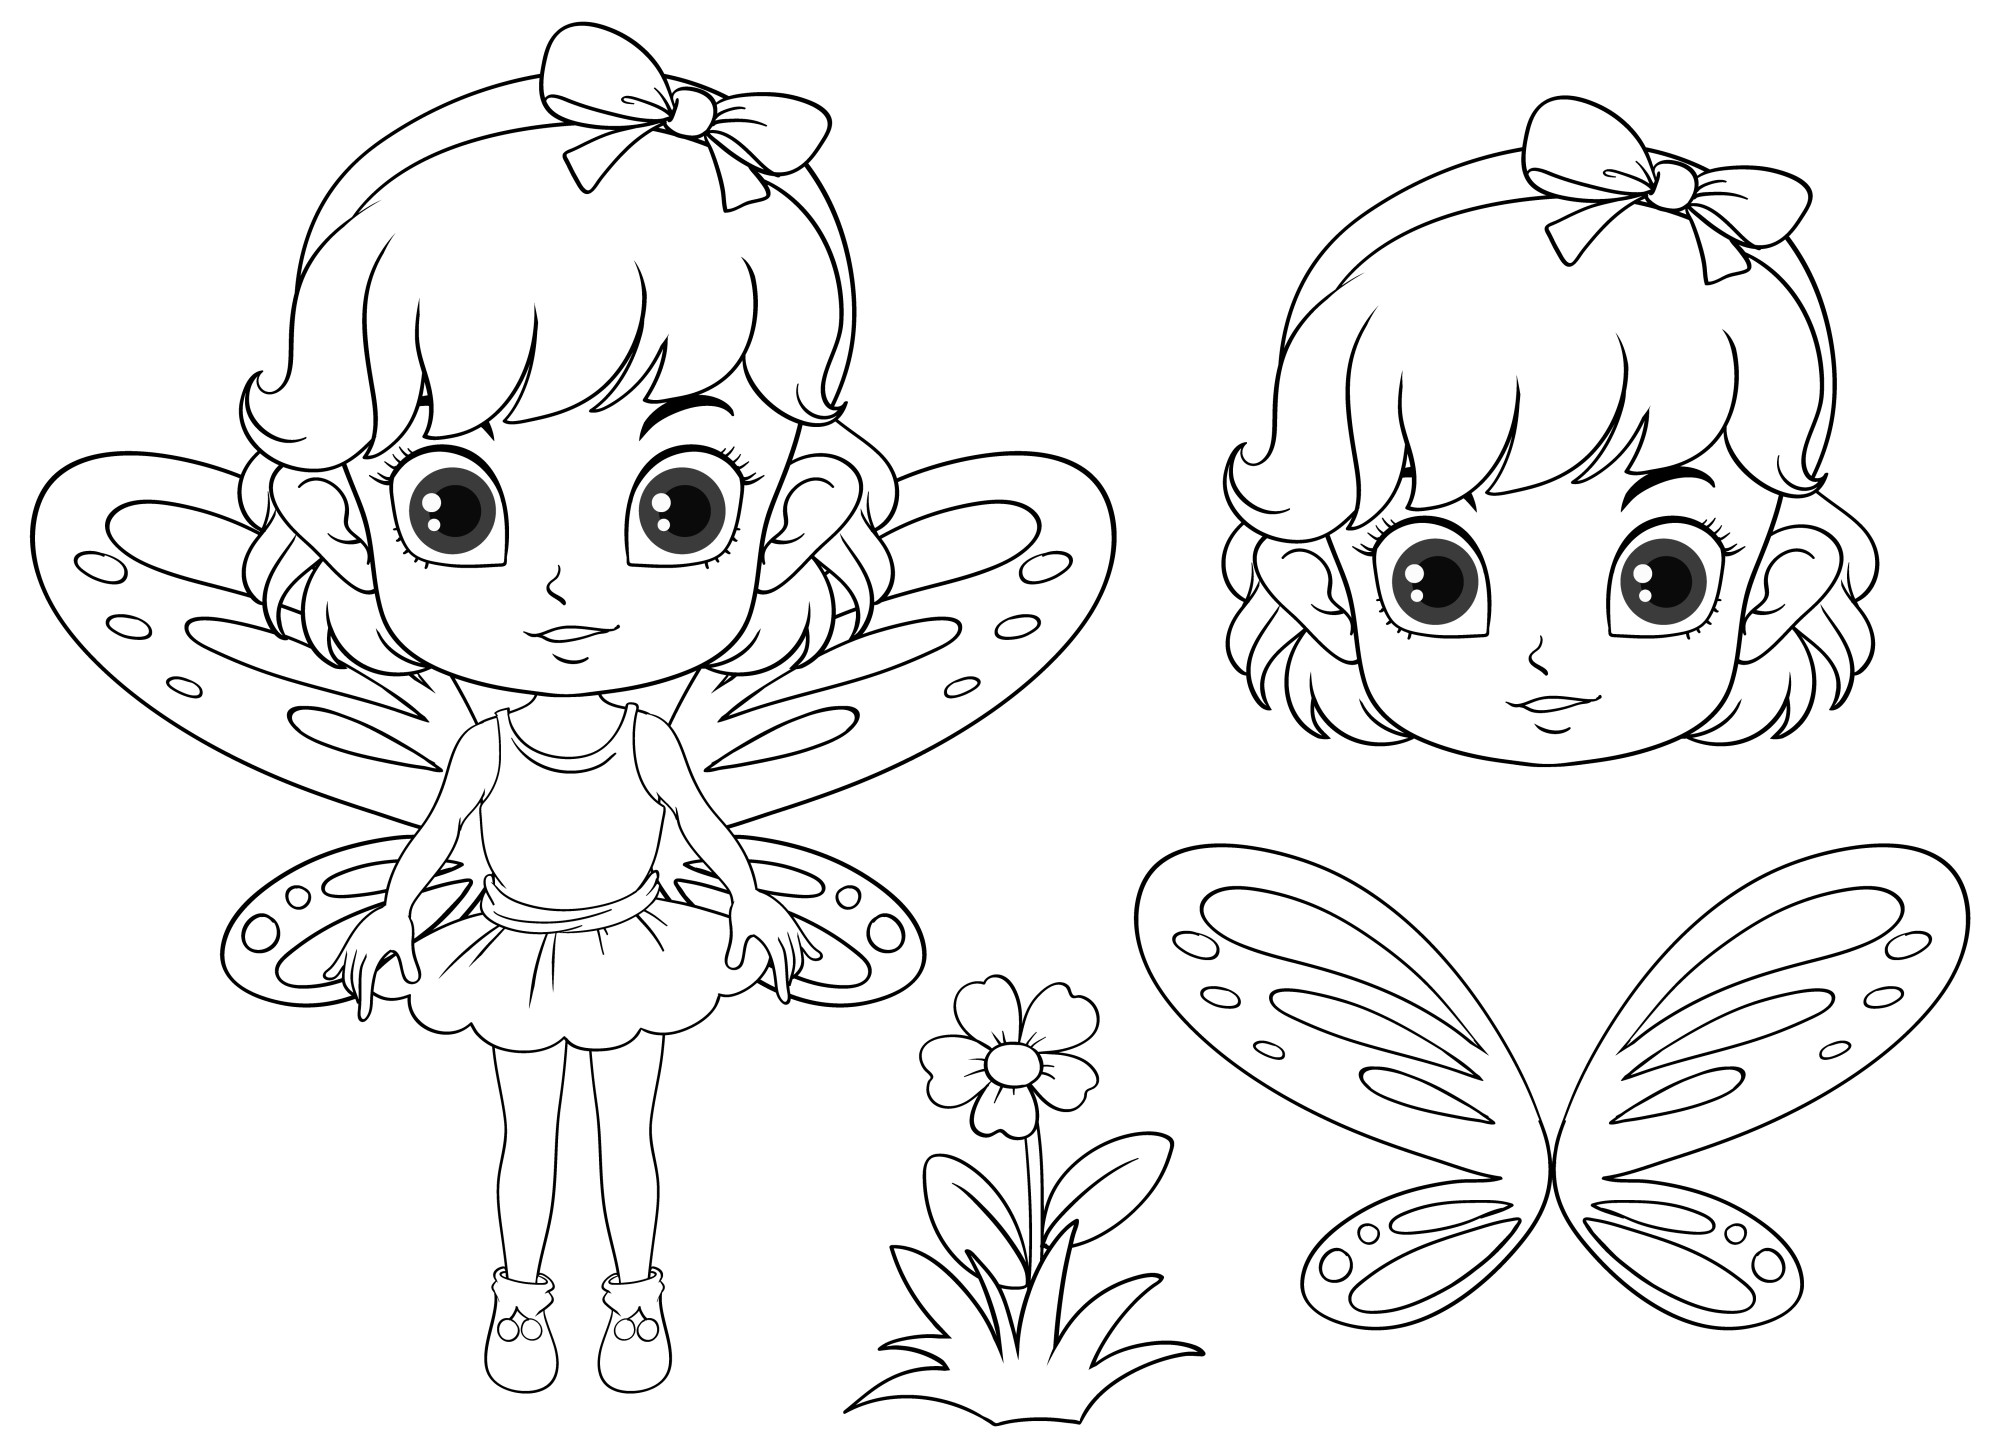 Раскраска для детей: девочка с красивыми крыльями бабочки и цветочком